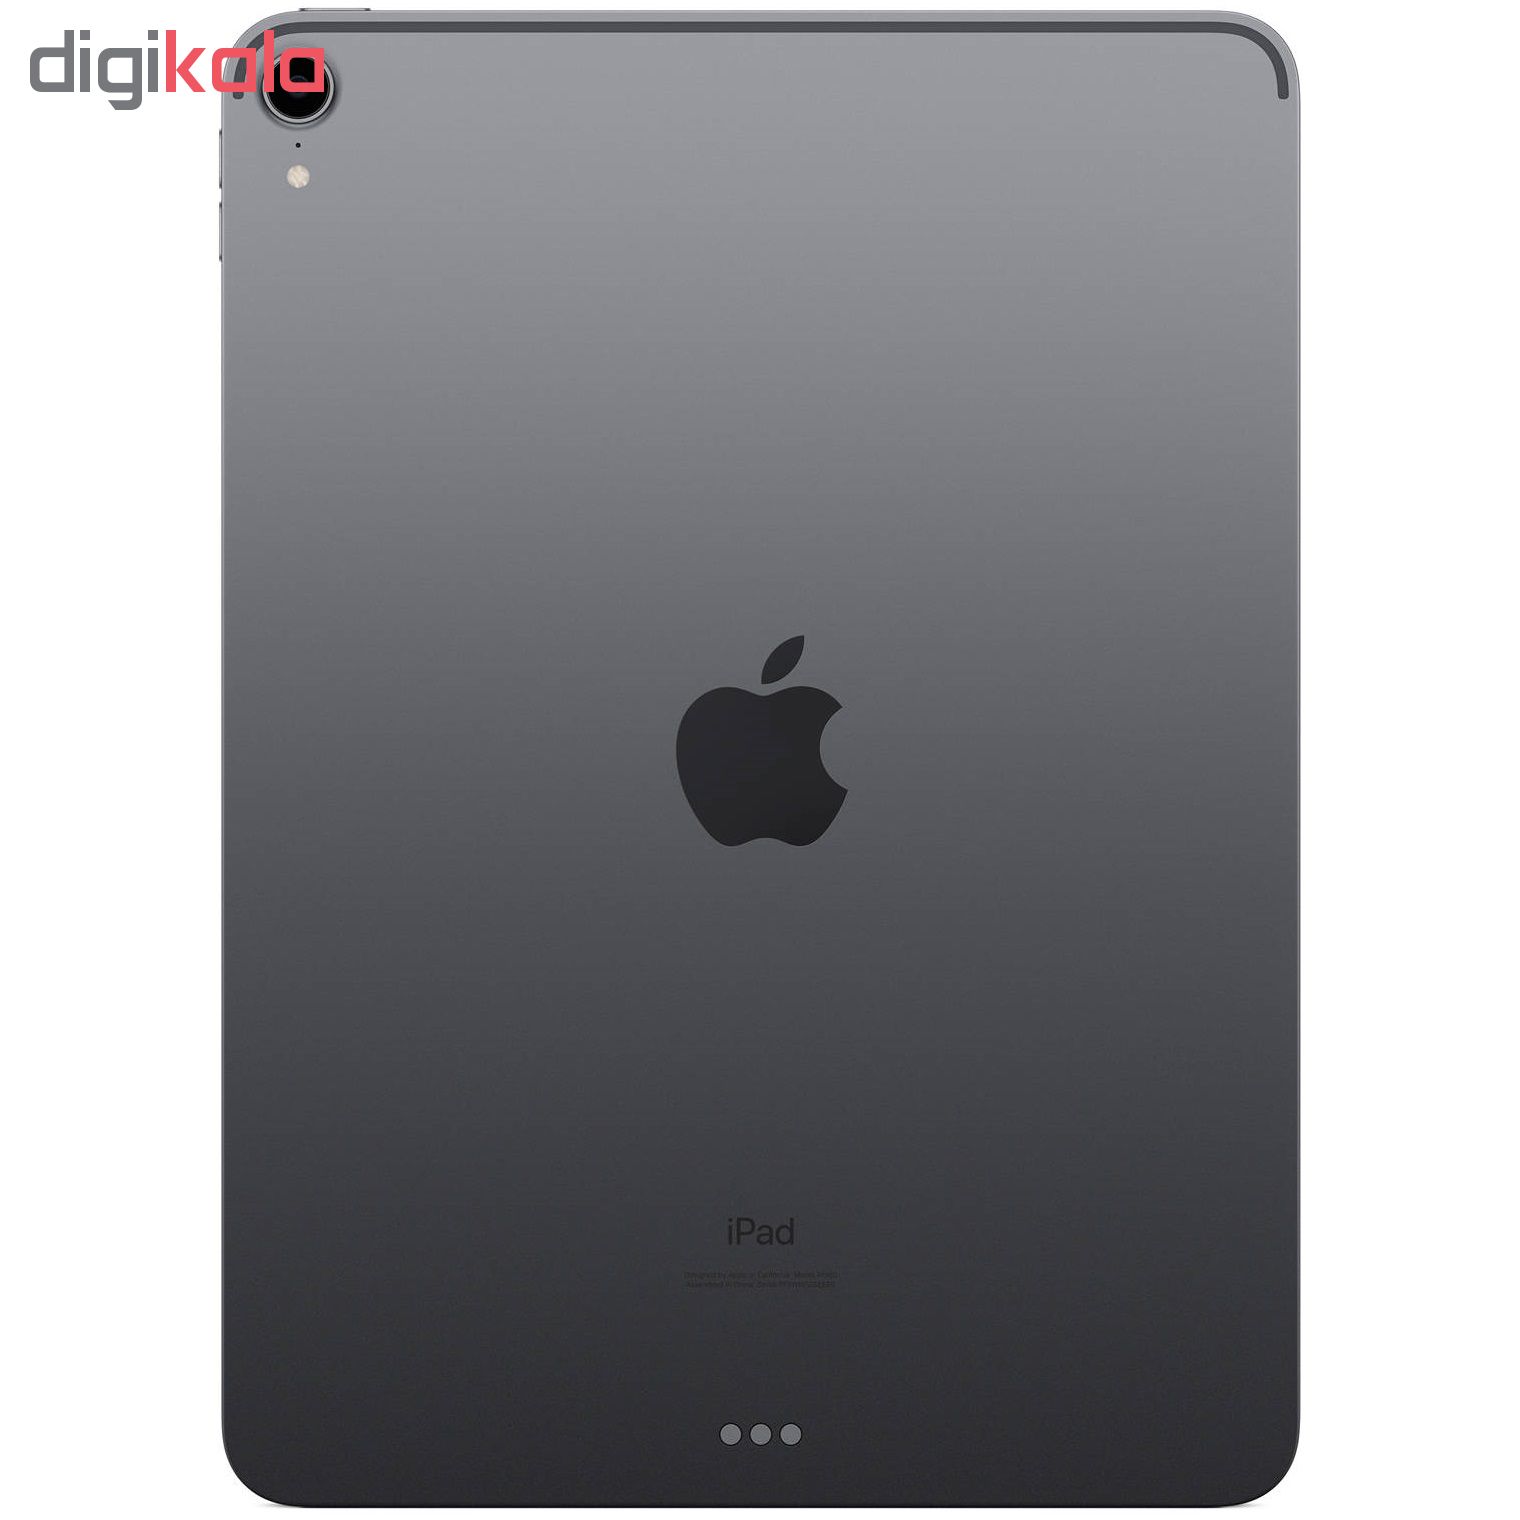  تبلت اپل مدل iPad Pro 20 12.9 inch WiFi ظرفیت 512 گیگابایت